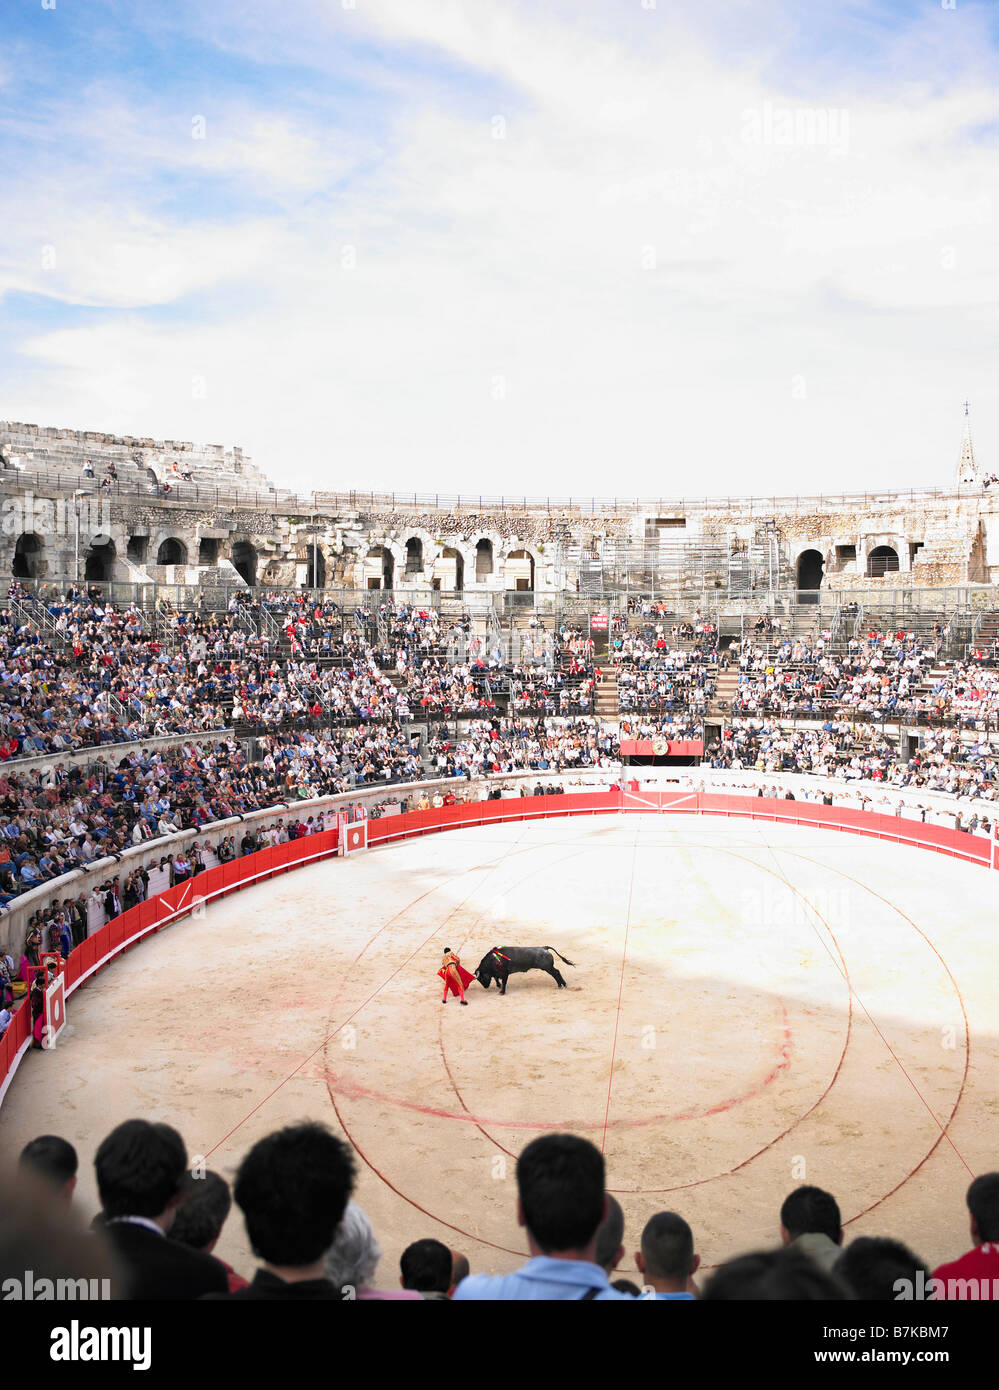 Los toros en la arena Foto de stock